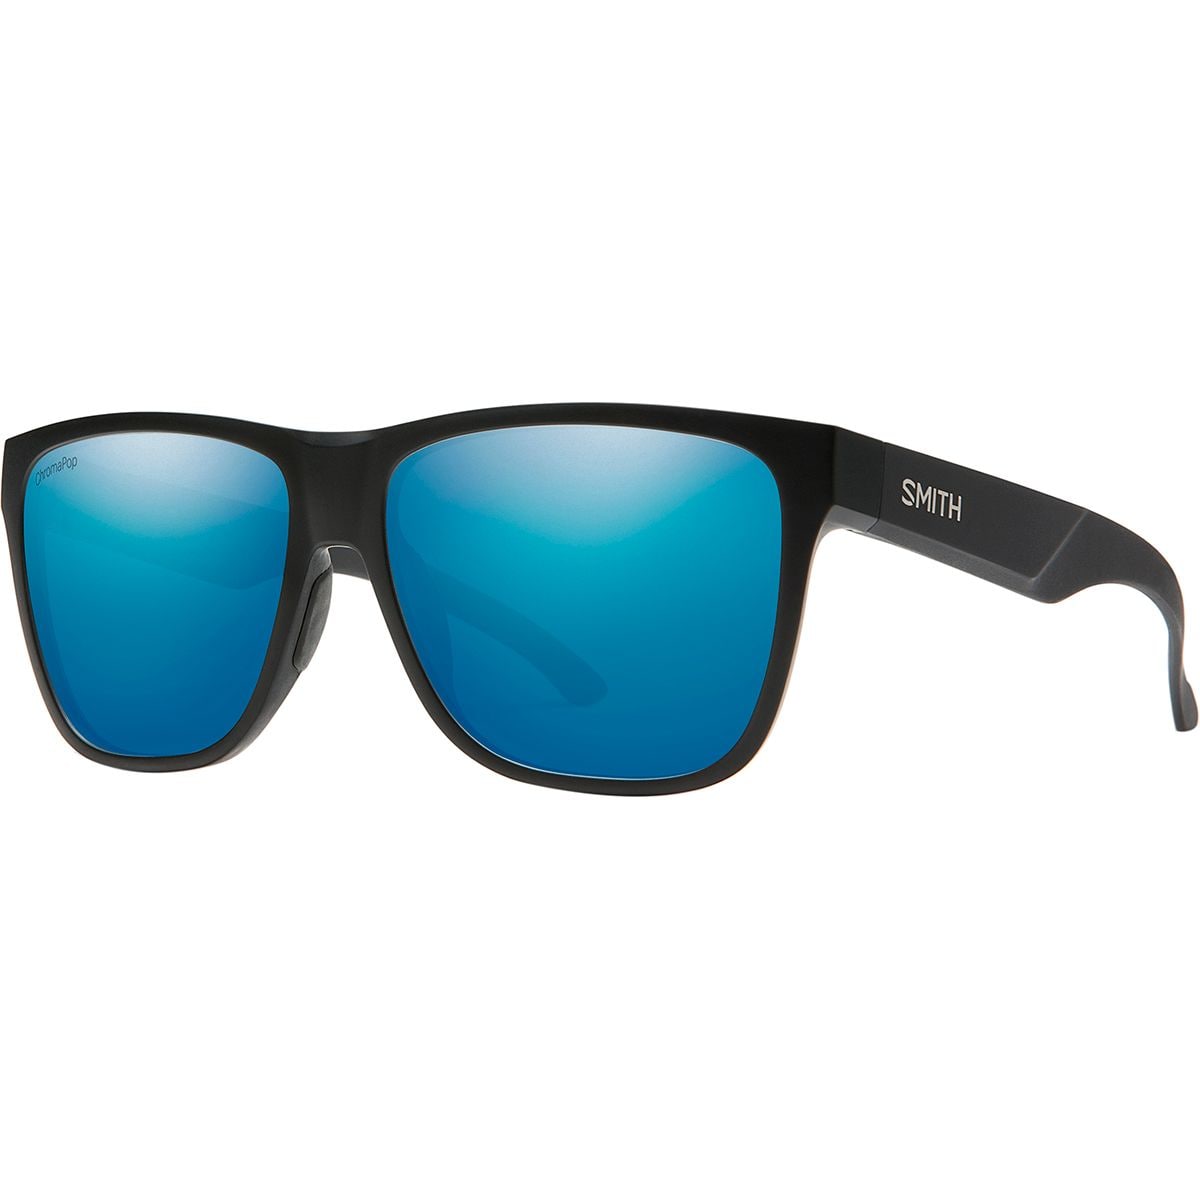 Photos - Sunglasses Smith Lowdown XL 2 ChromaPop Polarized  